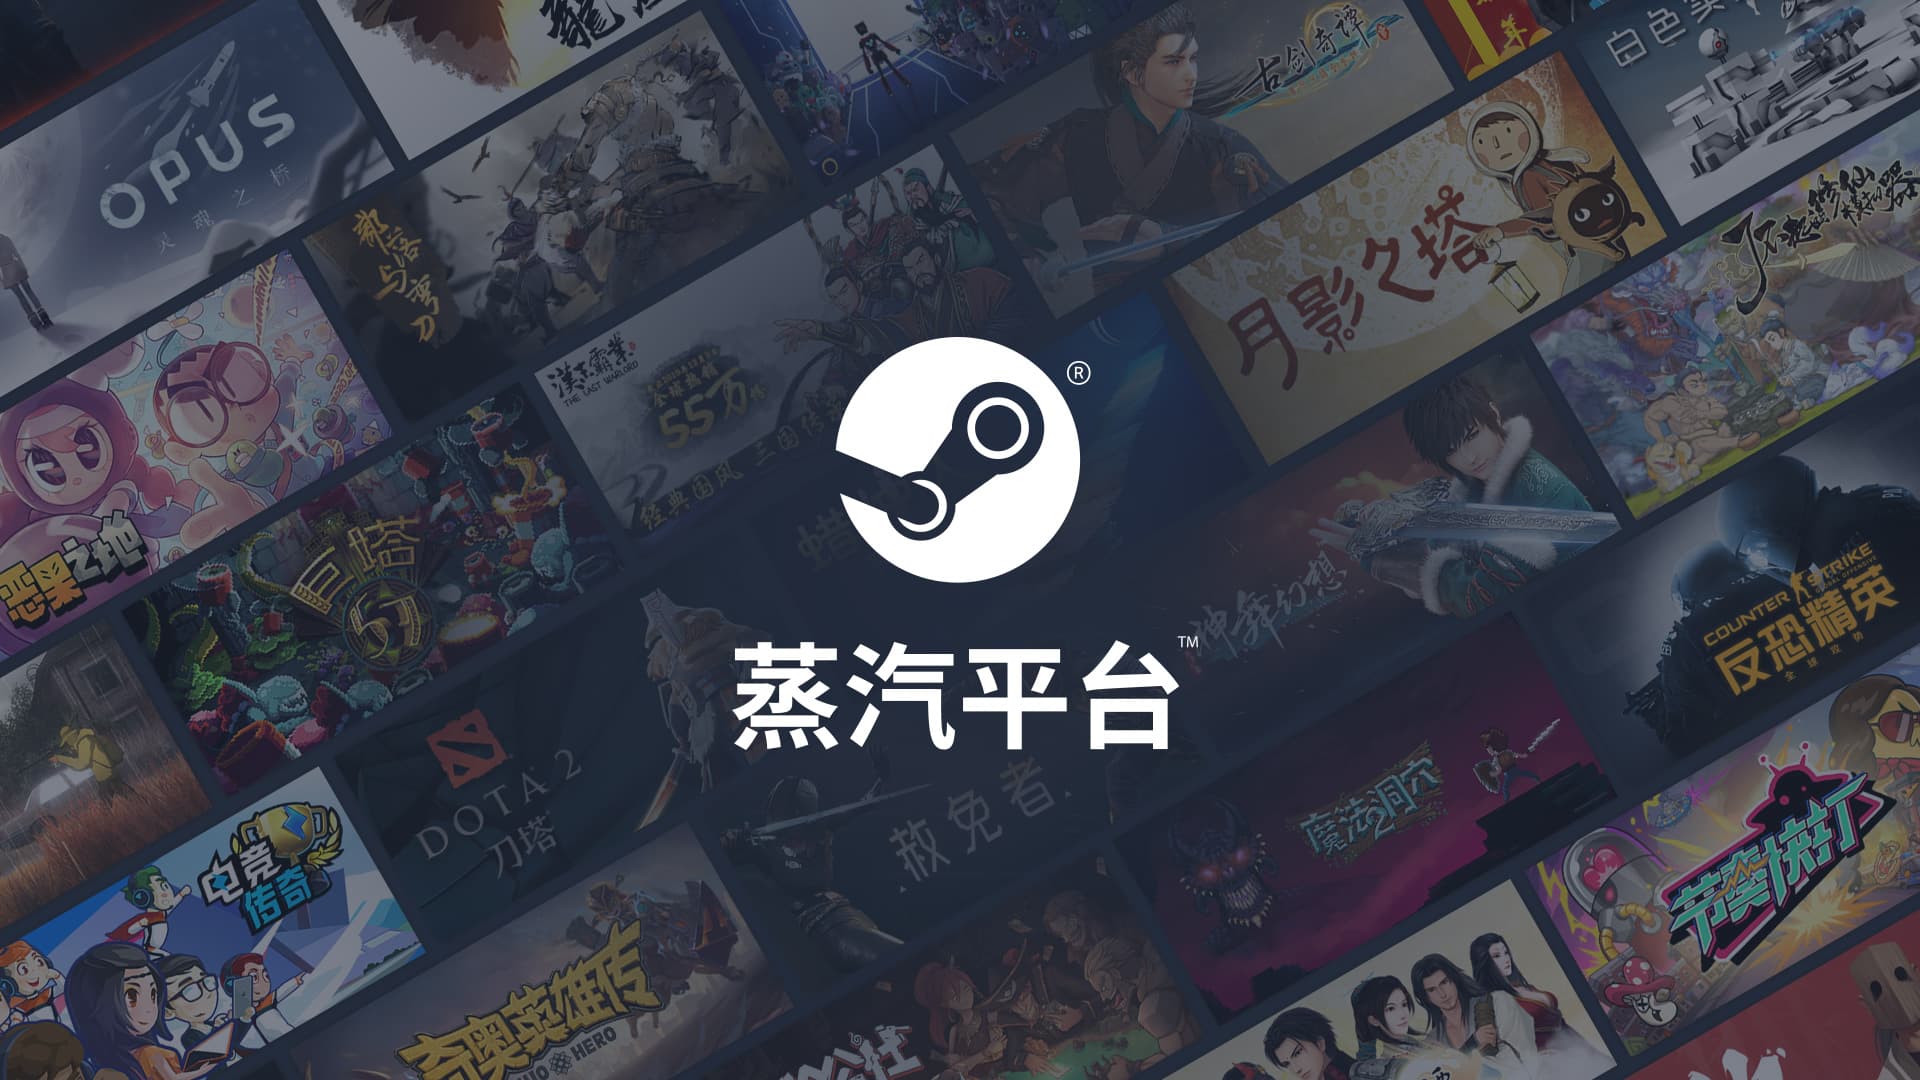 Steam est officiellement lancé en Chine